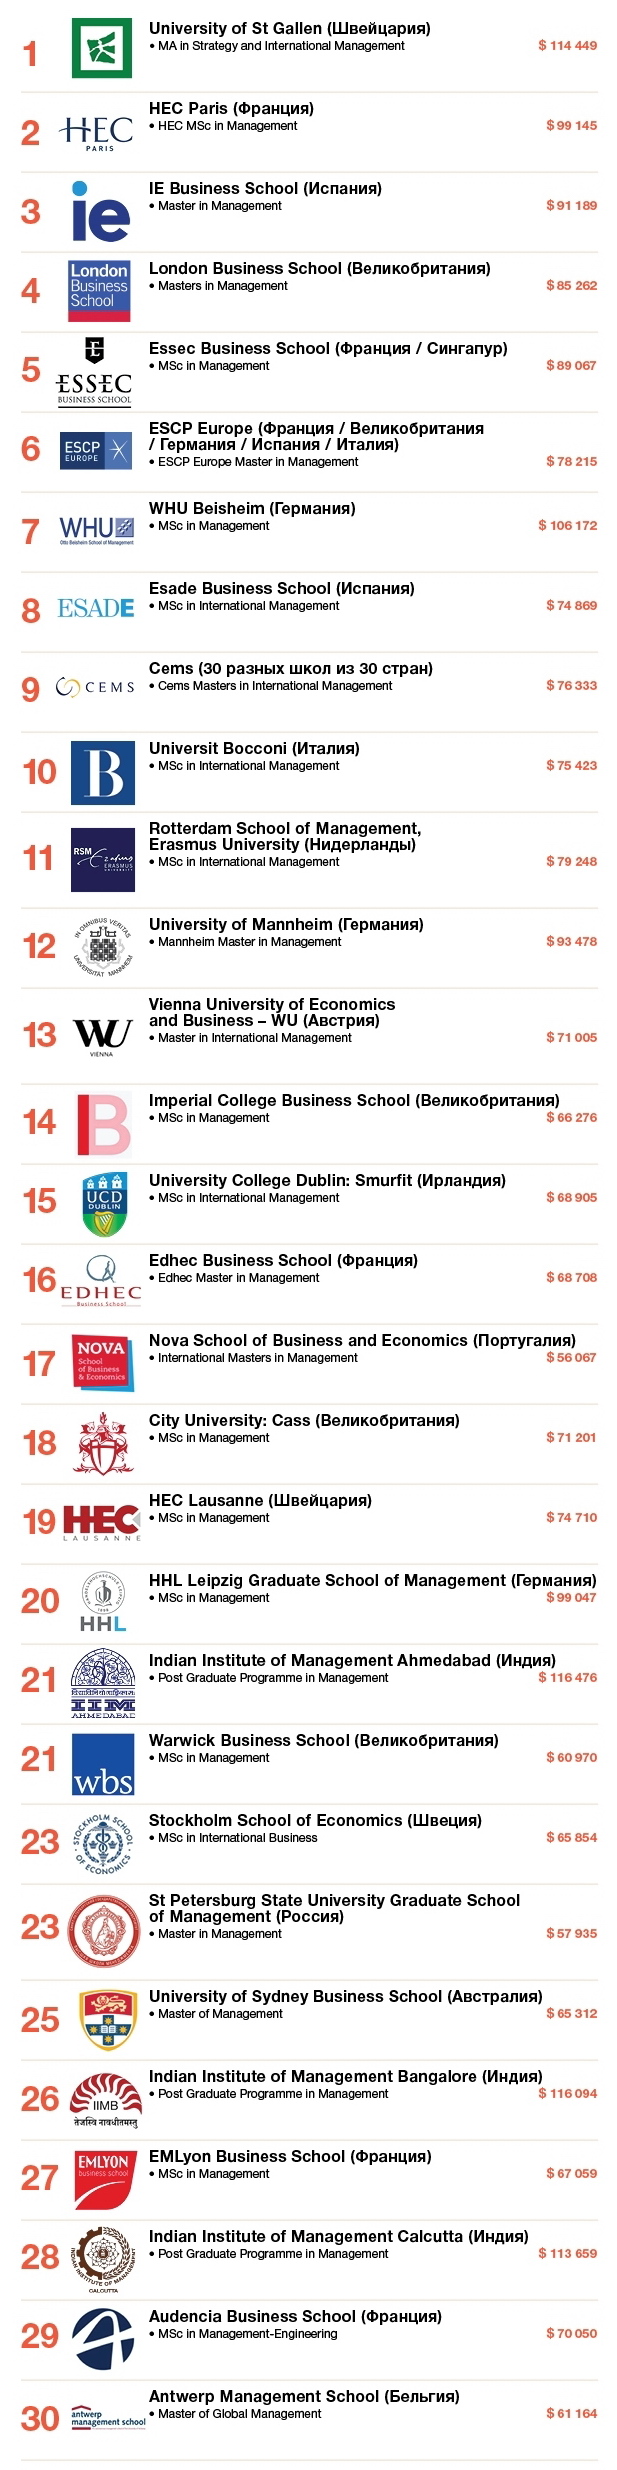 Лучшие программы по менеджменту и доходы их выпускников в рейтинге Financial Times за 2017 год